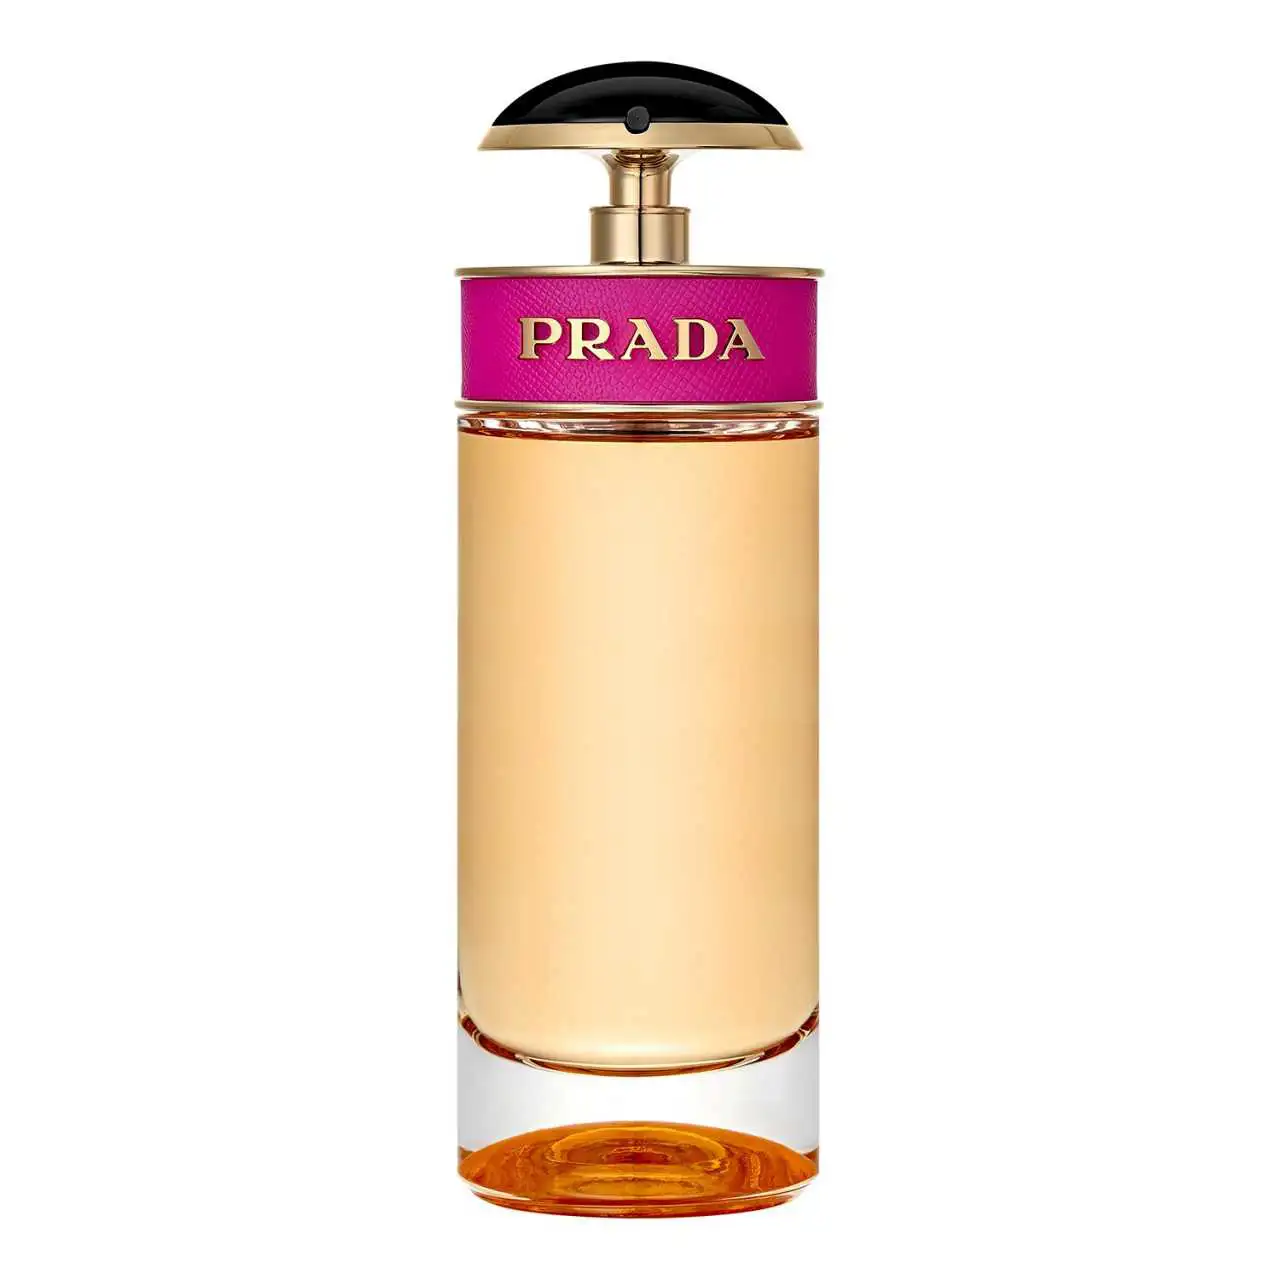 perfumes portuguesas 06